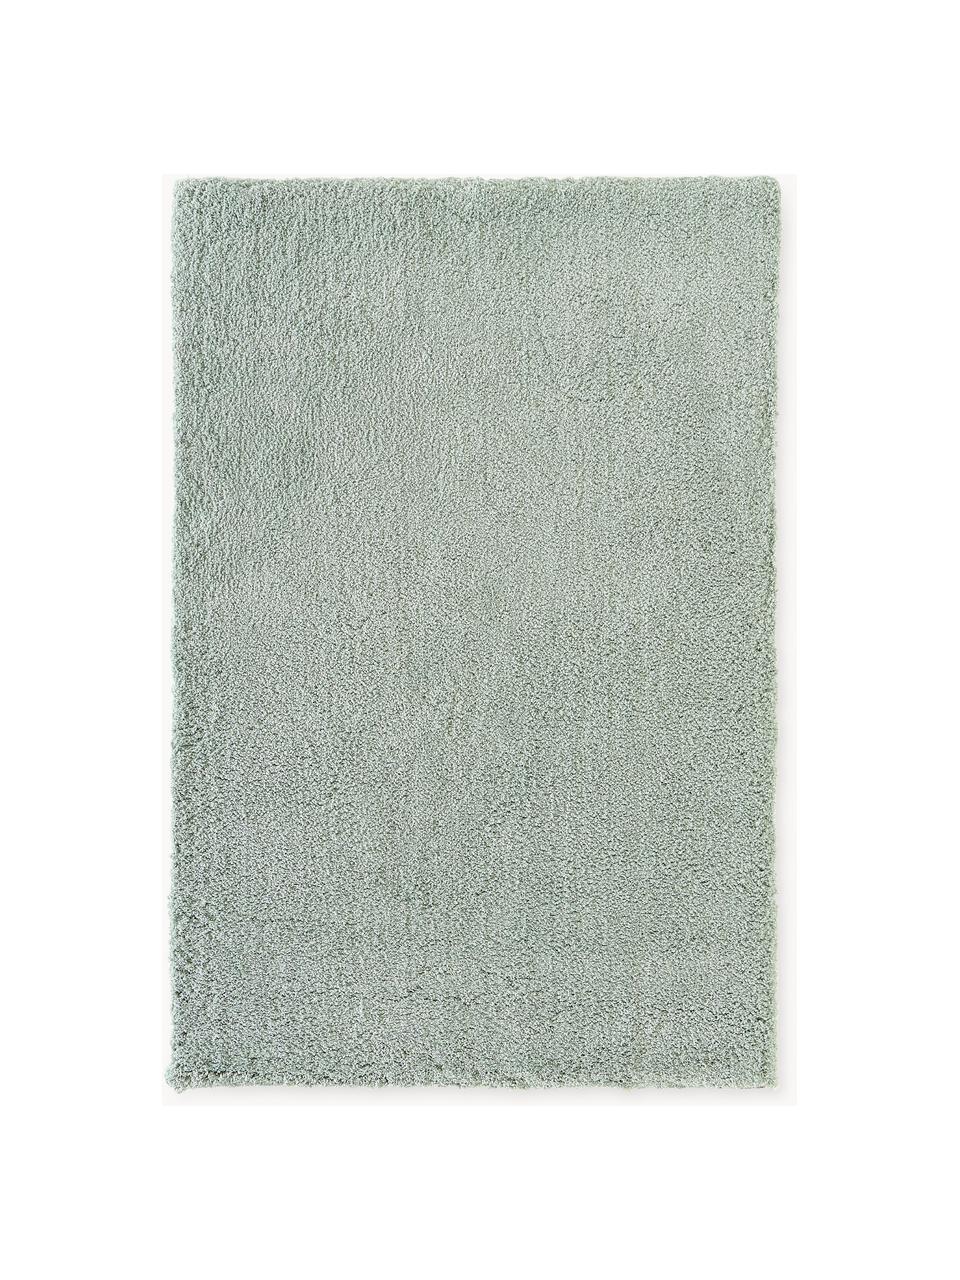 Puszysty dywan z długim włosiem Leighton, Szałwiowy zielony, S 80 x D 150 cm (Rozmiar XS)